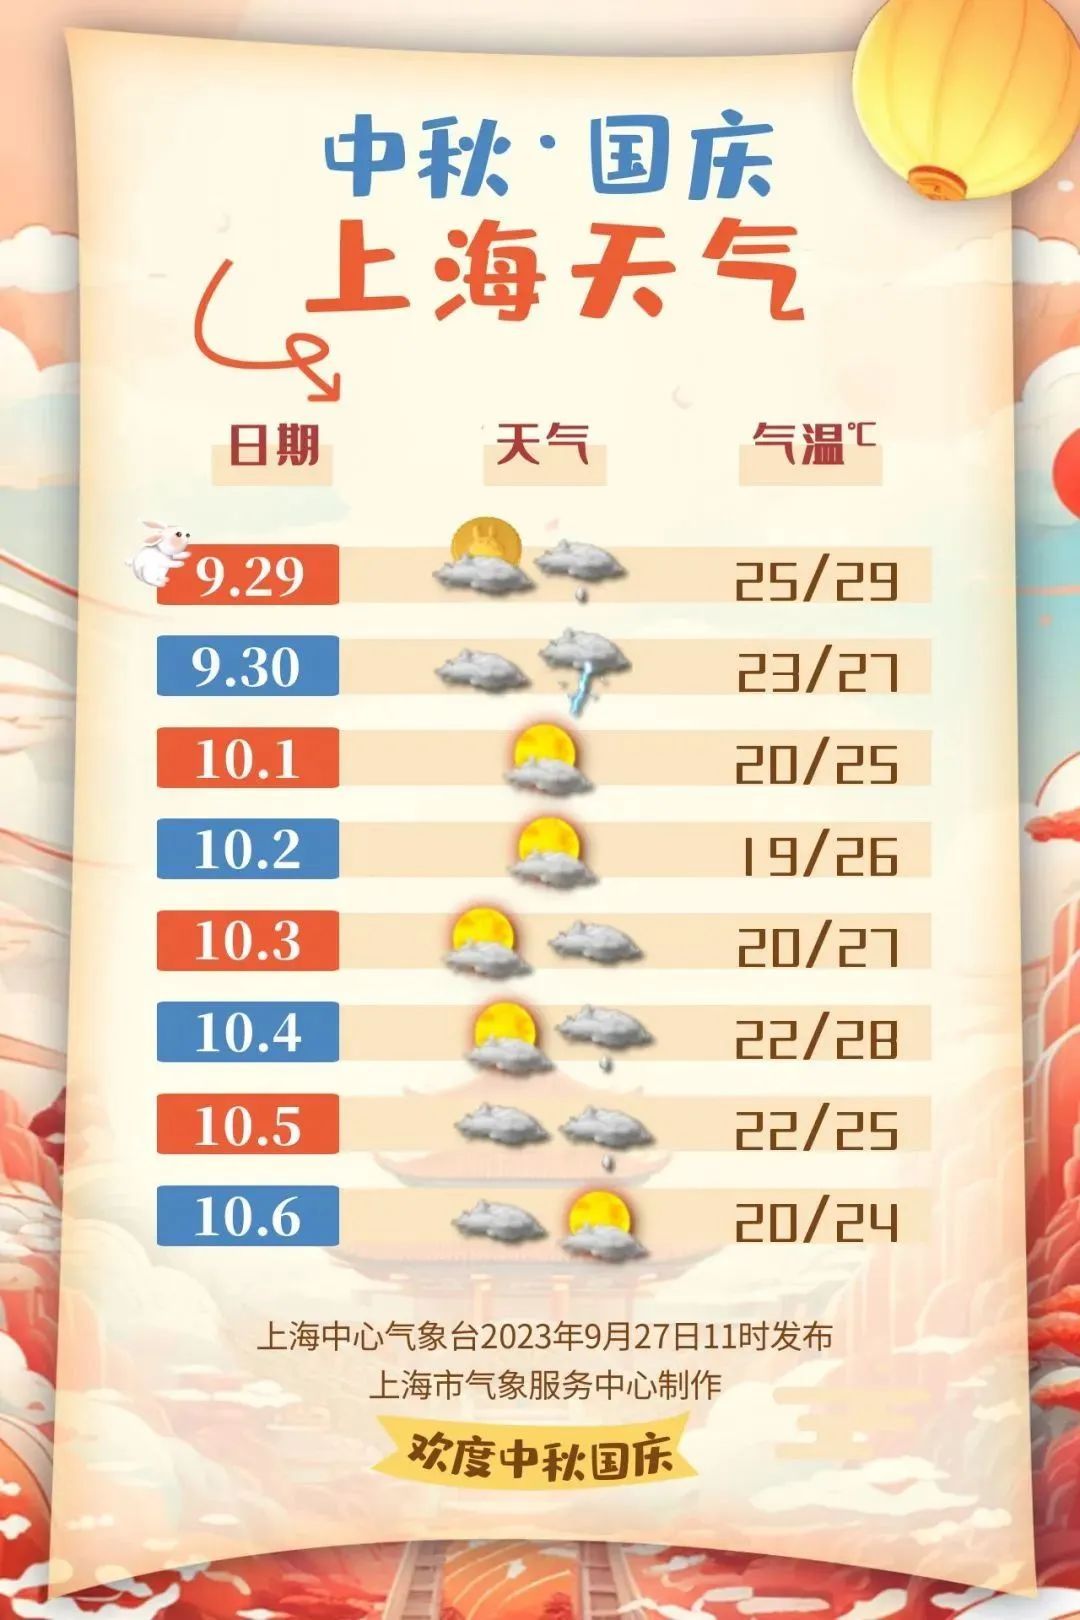 长假期间上海天气预报出炉未来又有新台风生成影响出行吗还可赏月吗